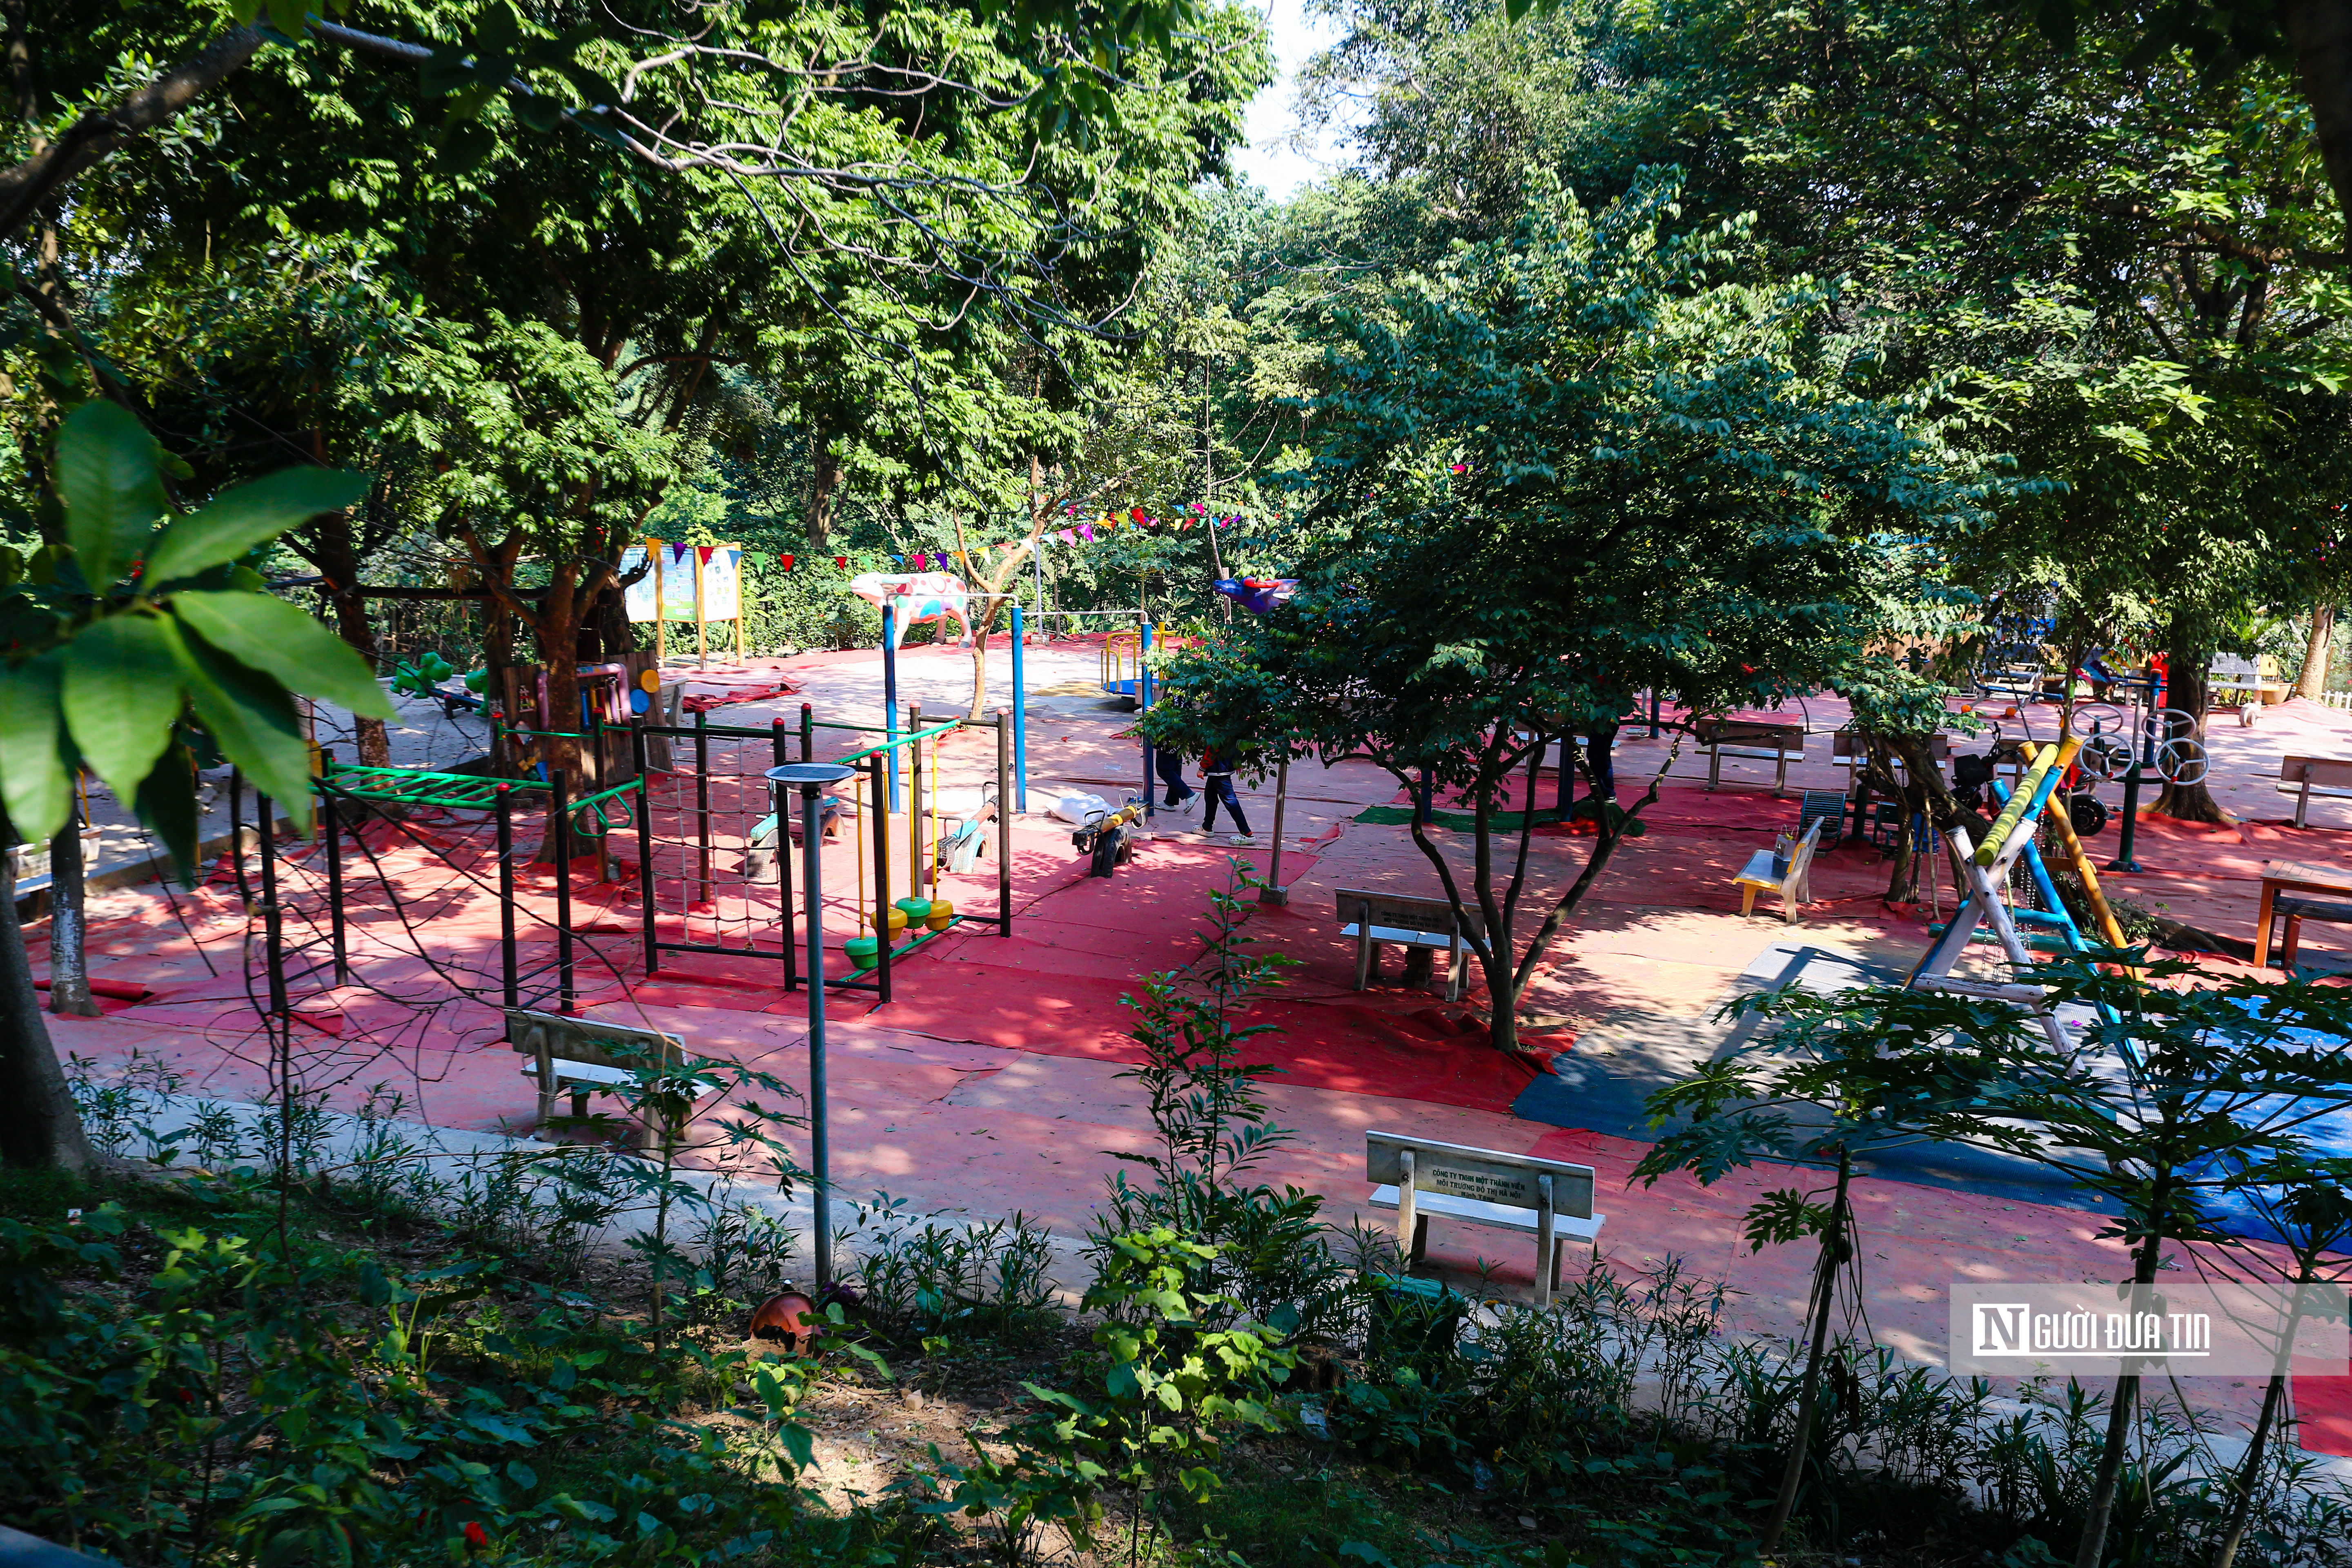 Dân sinh - Công viên rừng giữa trung tâm Thủ đô được cải tạo từ bãi rác (Hình 6).